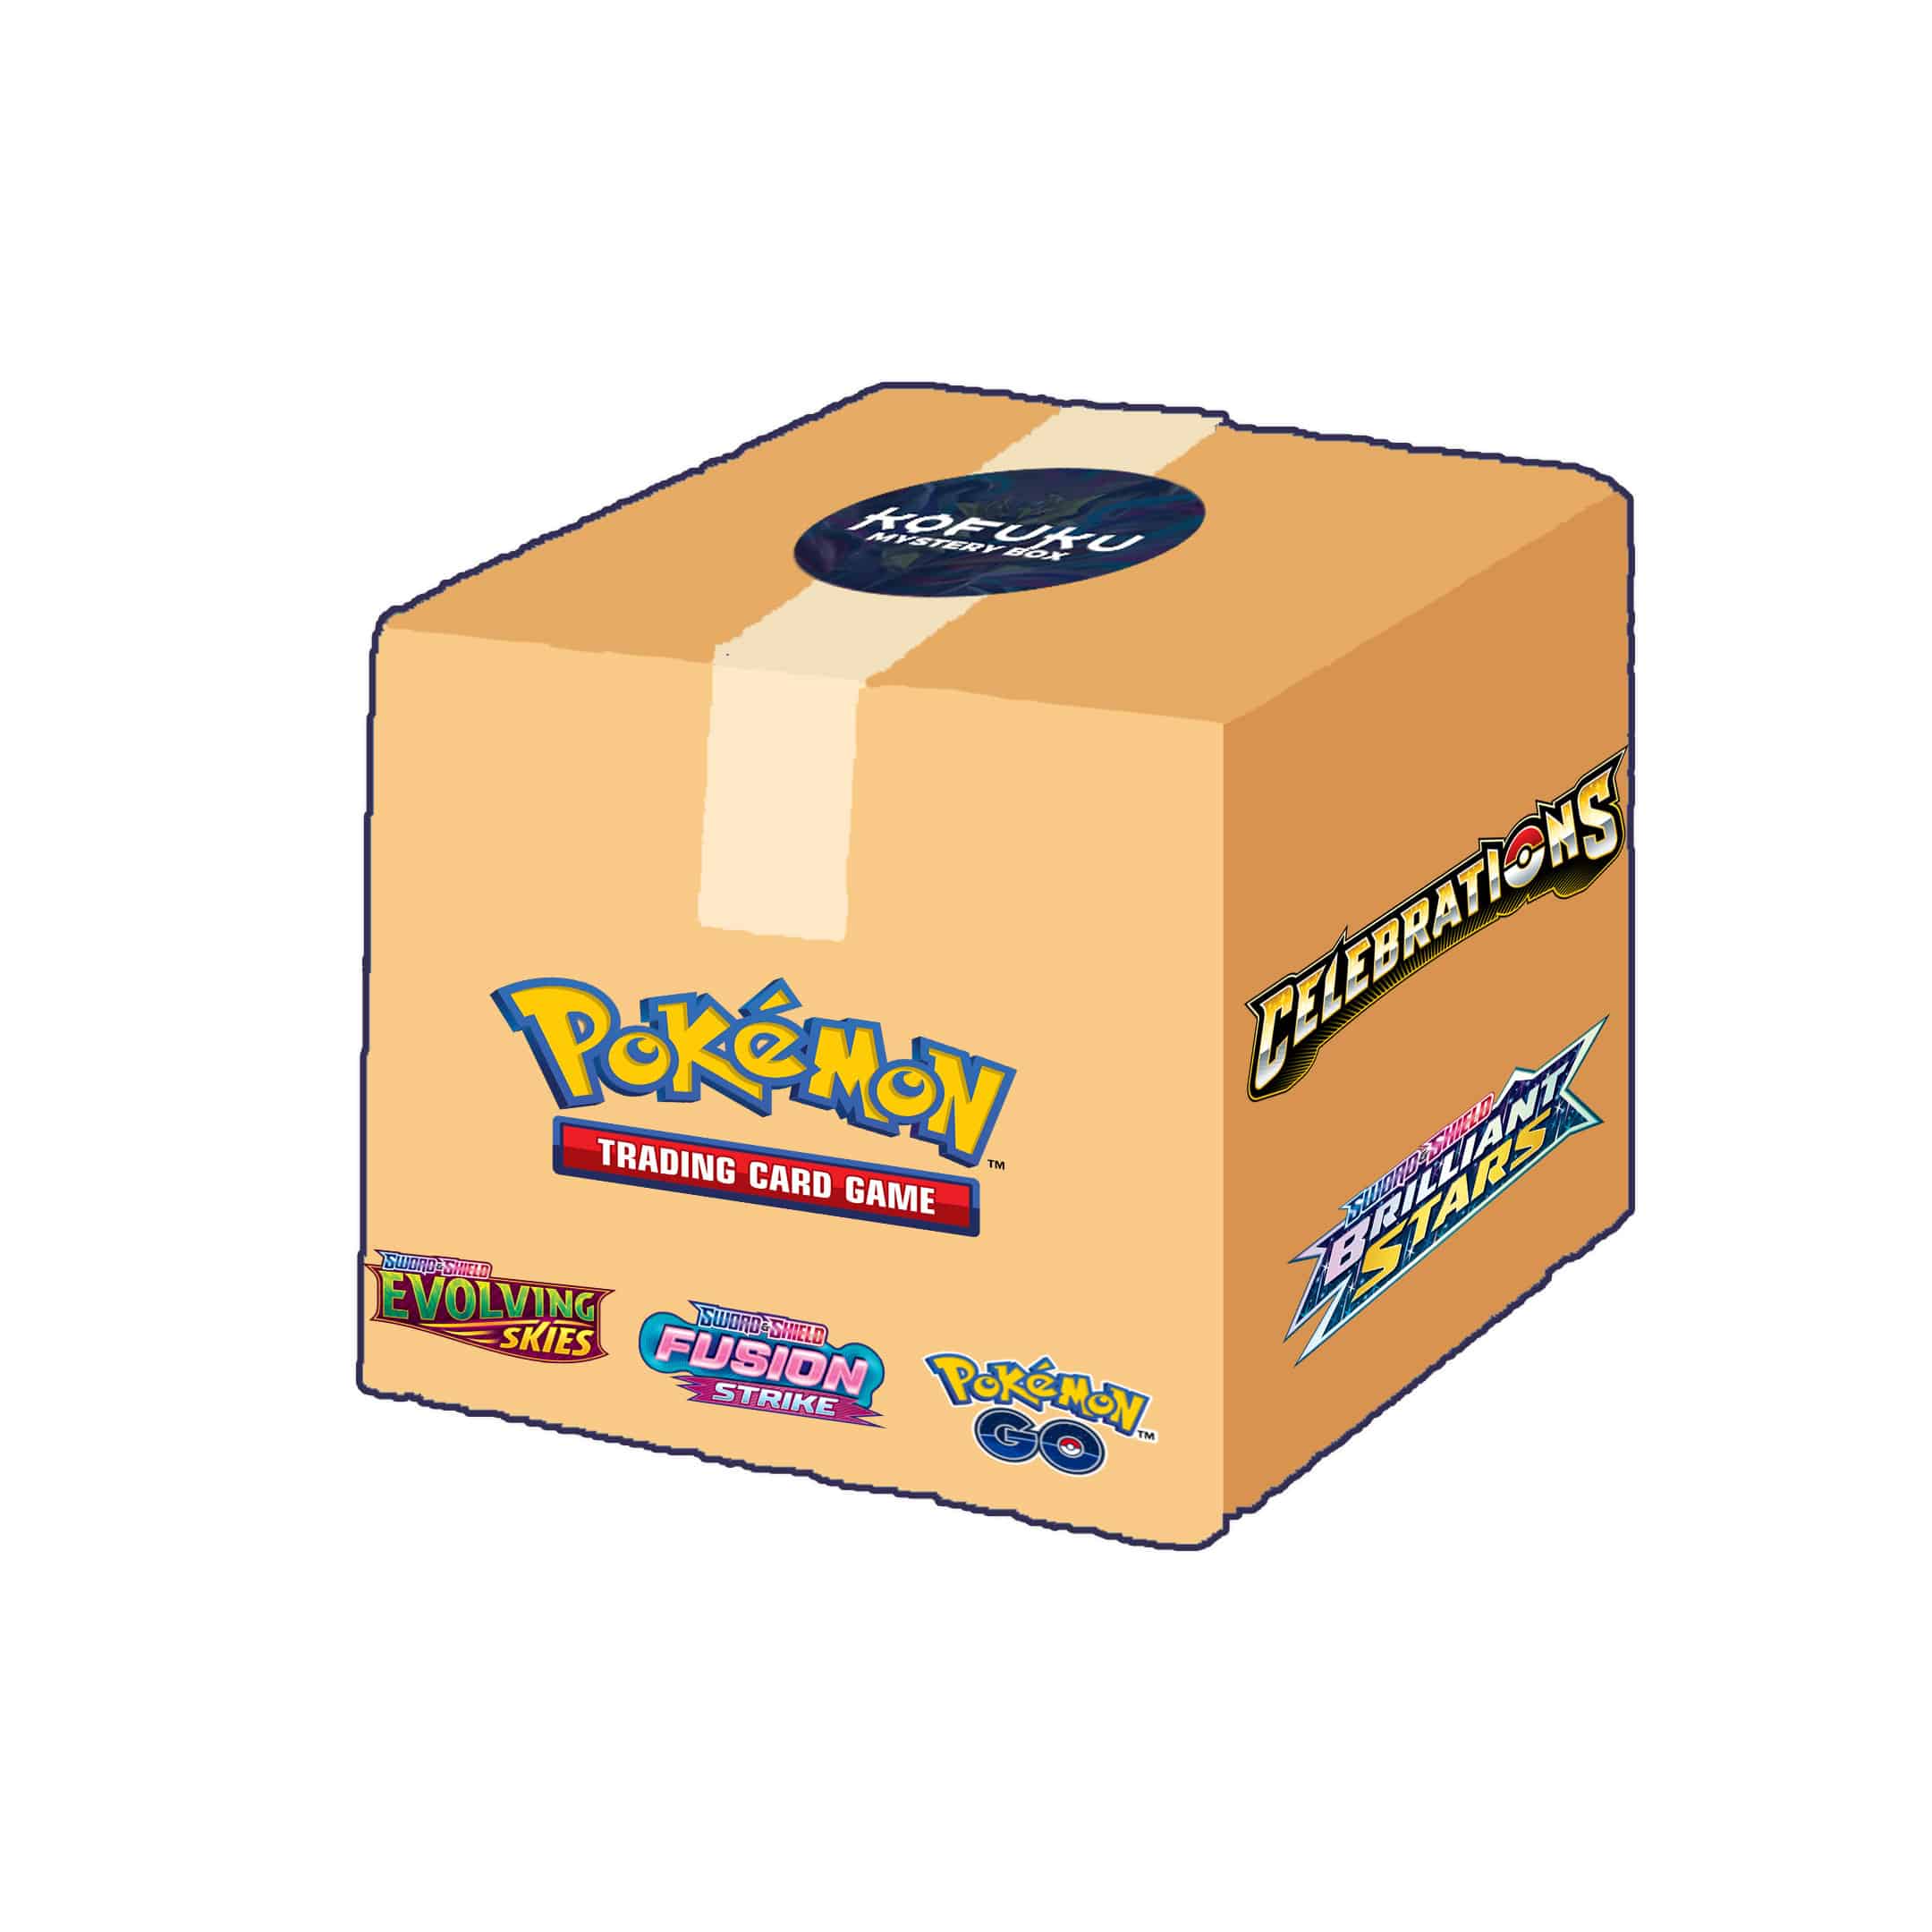 Pokémon TCG Mystery Box